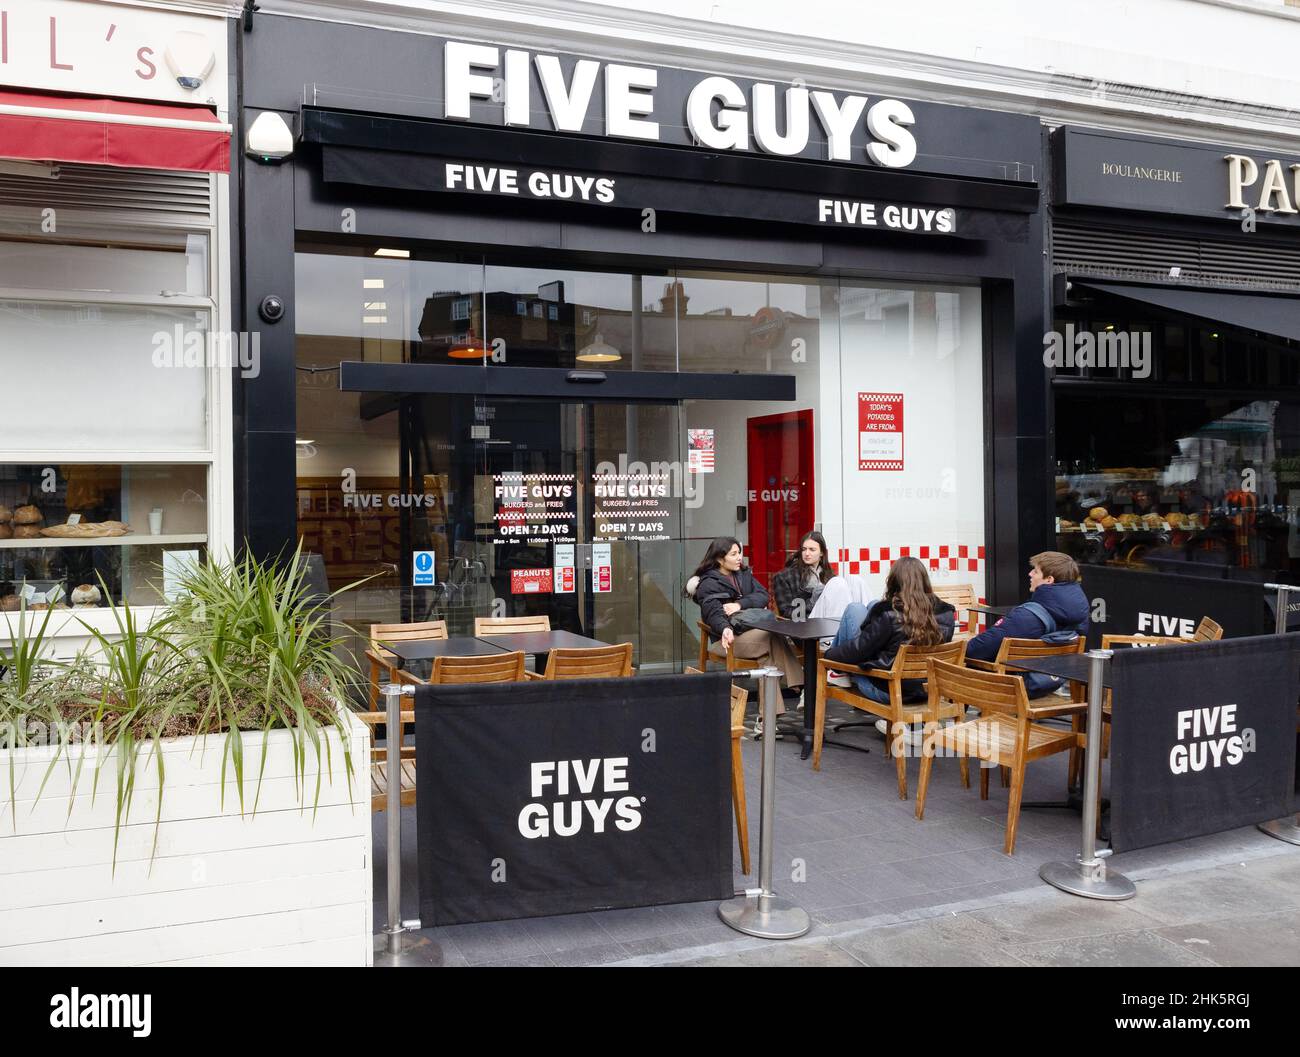 Five Guys UK; persone che mangiano all'esterno di un ristorante Five Guys, una catena di ristoranti americana con ristoranti in tutto il Regno Unito, South Kensington, Londra UK Foto Stock